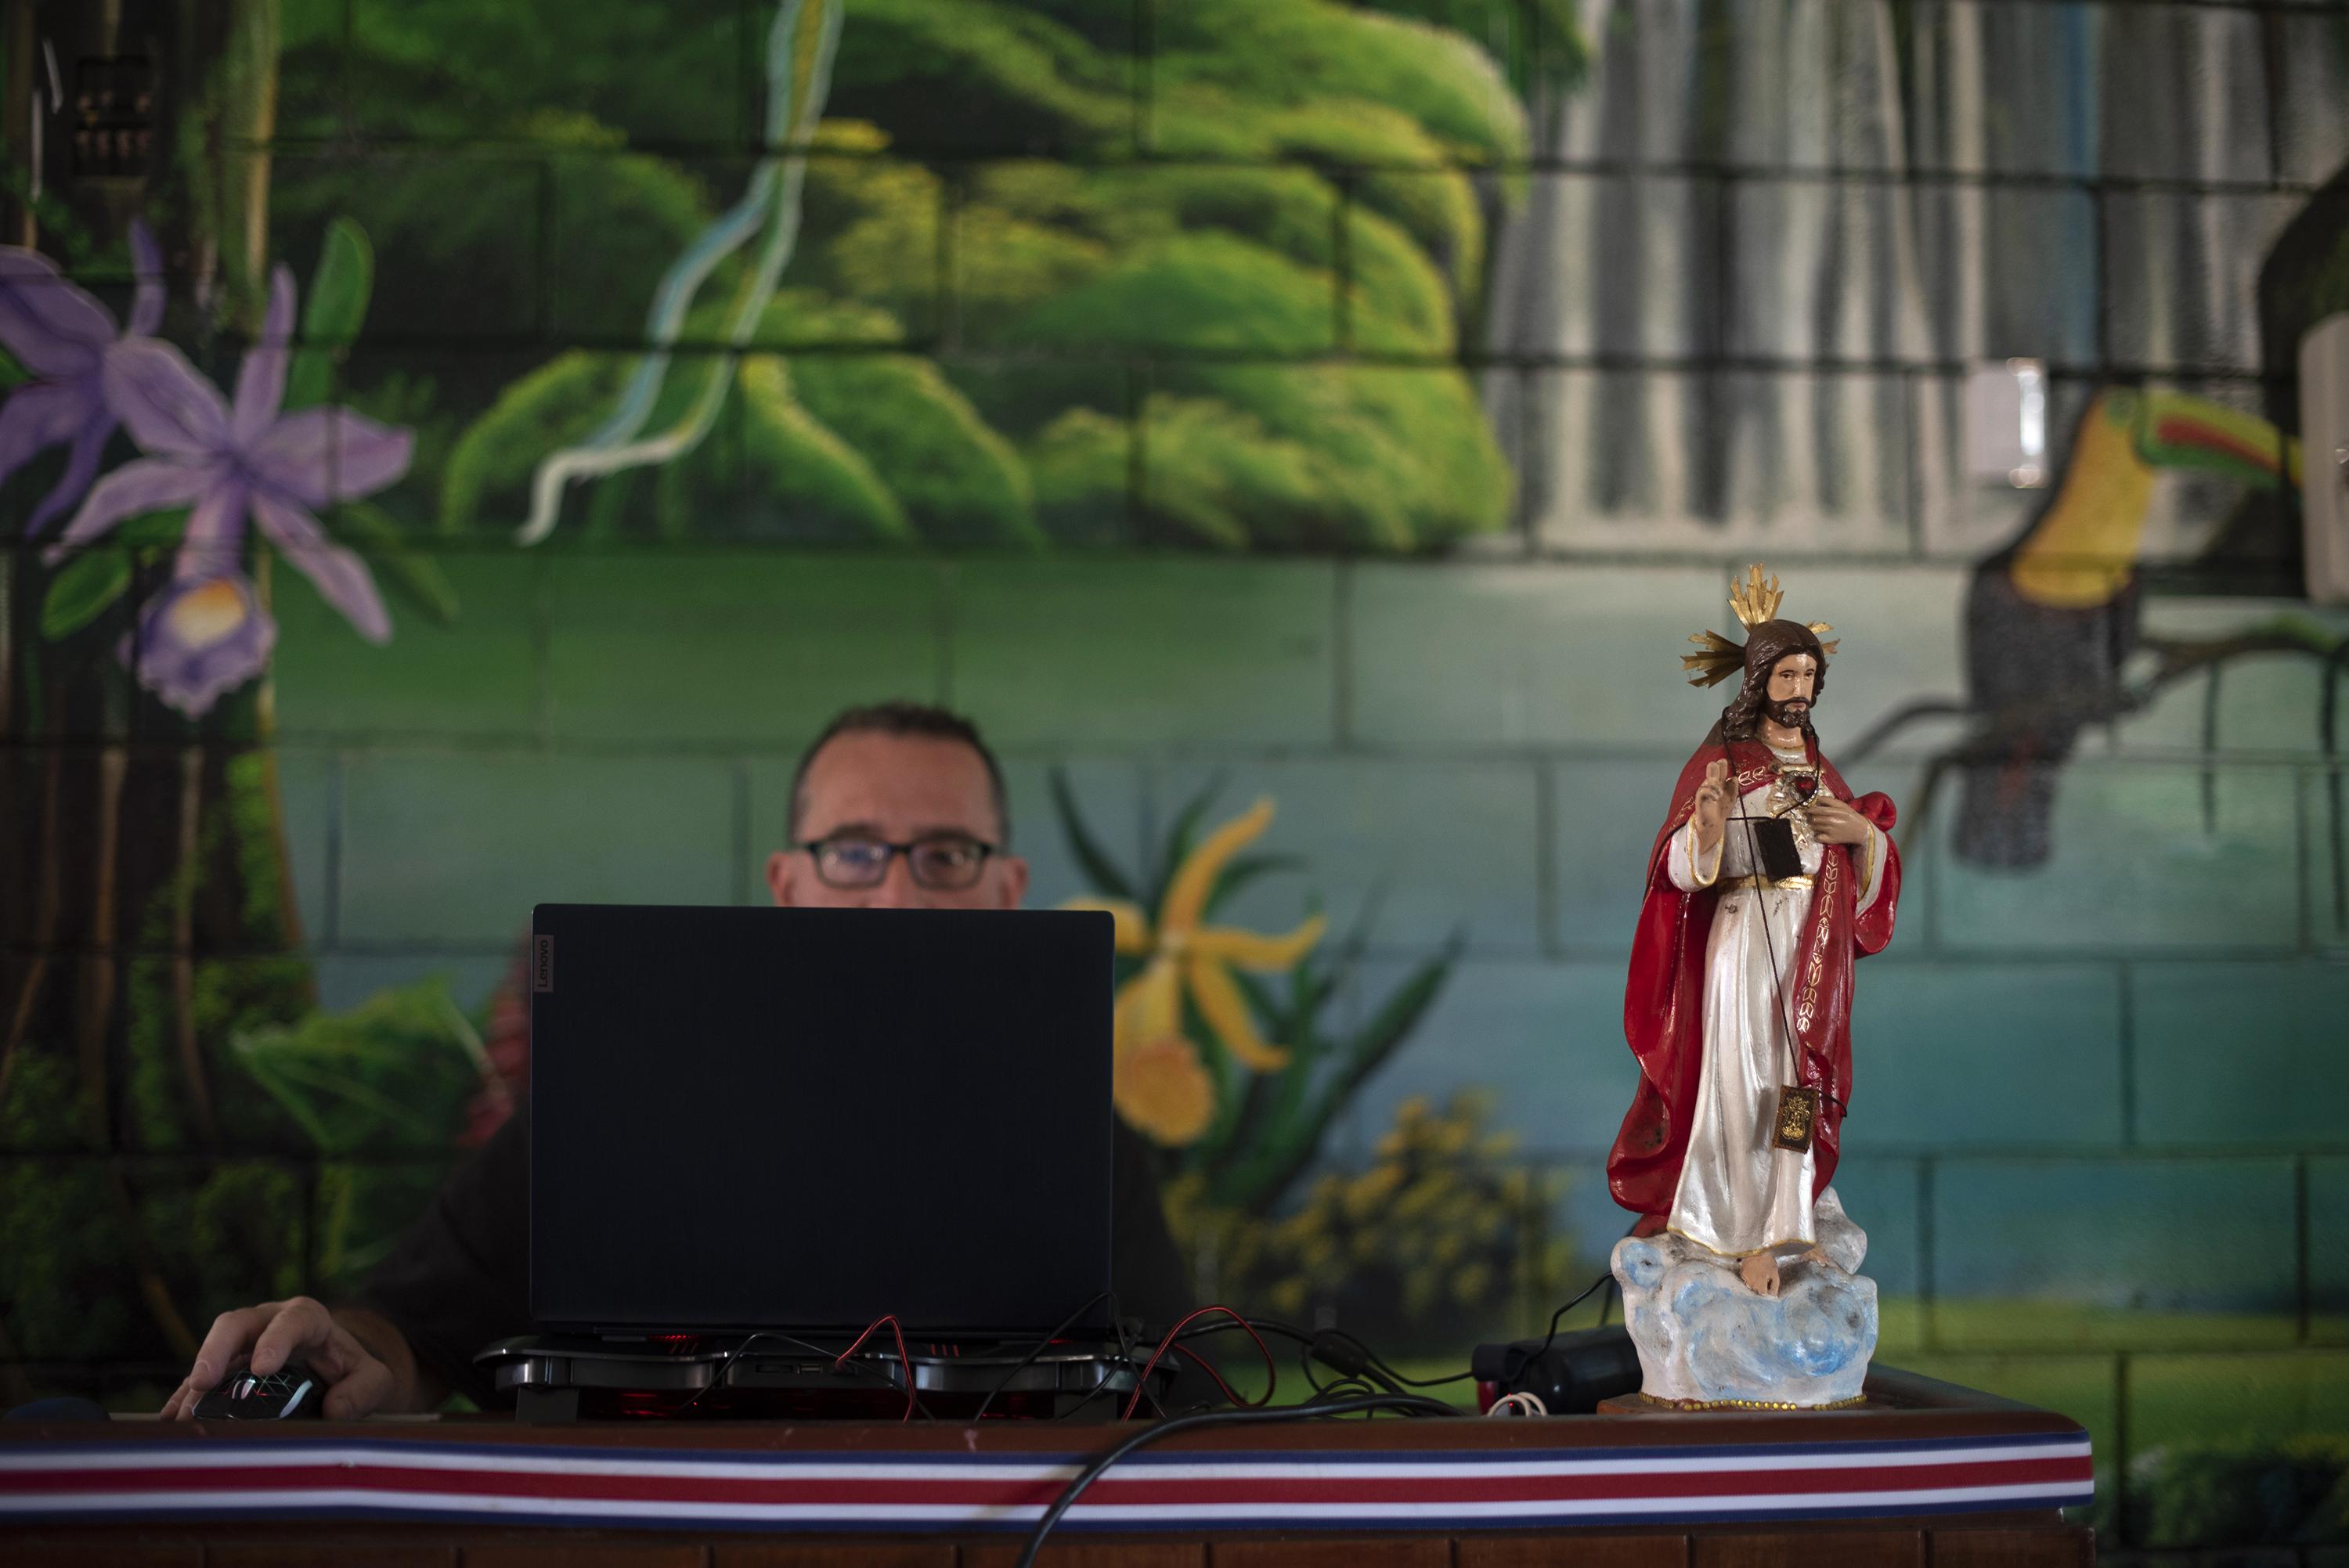 En la escuela pública Costa Rica, cerca de la capital, un funcionario intentaba conectar la computadora a la transmisión del partido cuando aún los locales tenían fe en un 'milagro' para su selección en Qatar 2022.